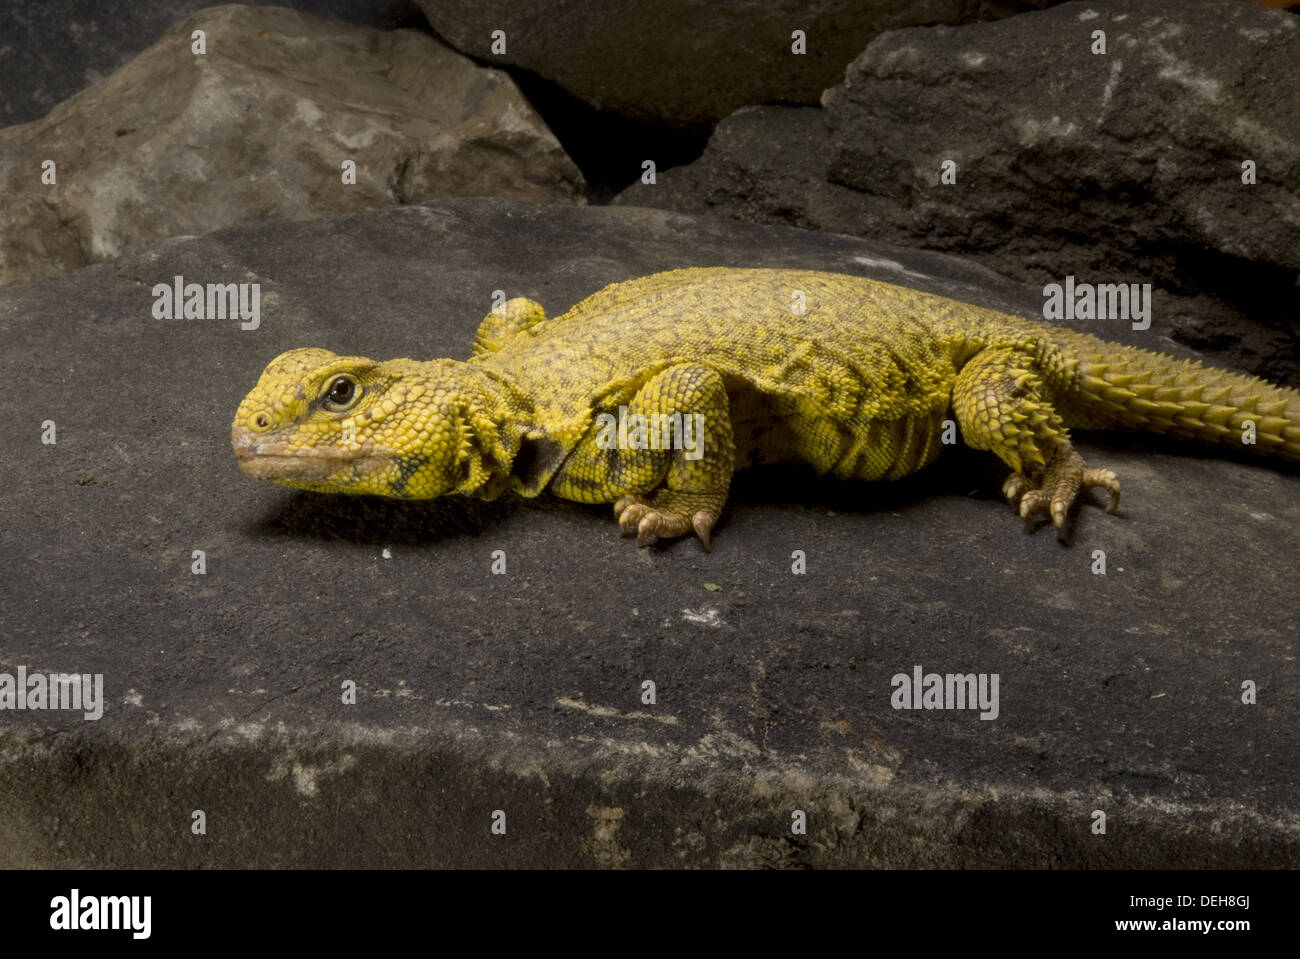 saharan spiny-tailes lizard, uromastyx geyri Stock Photo